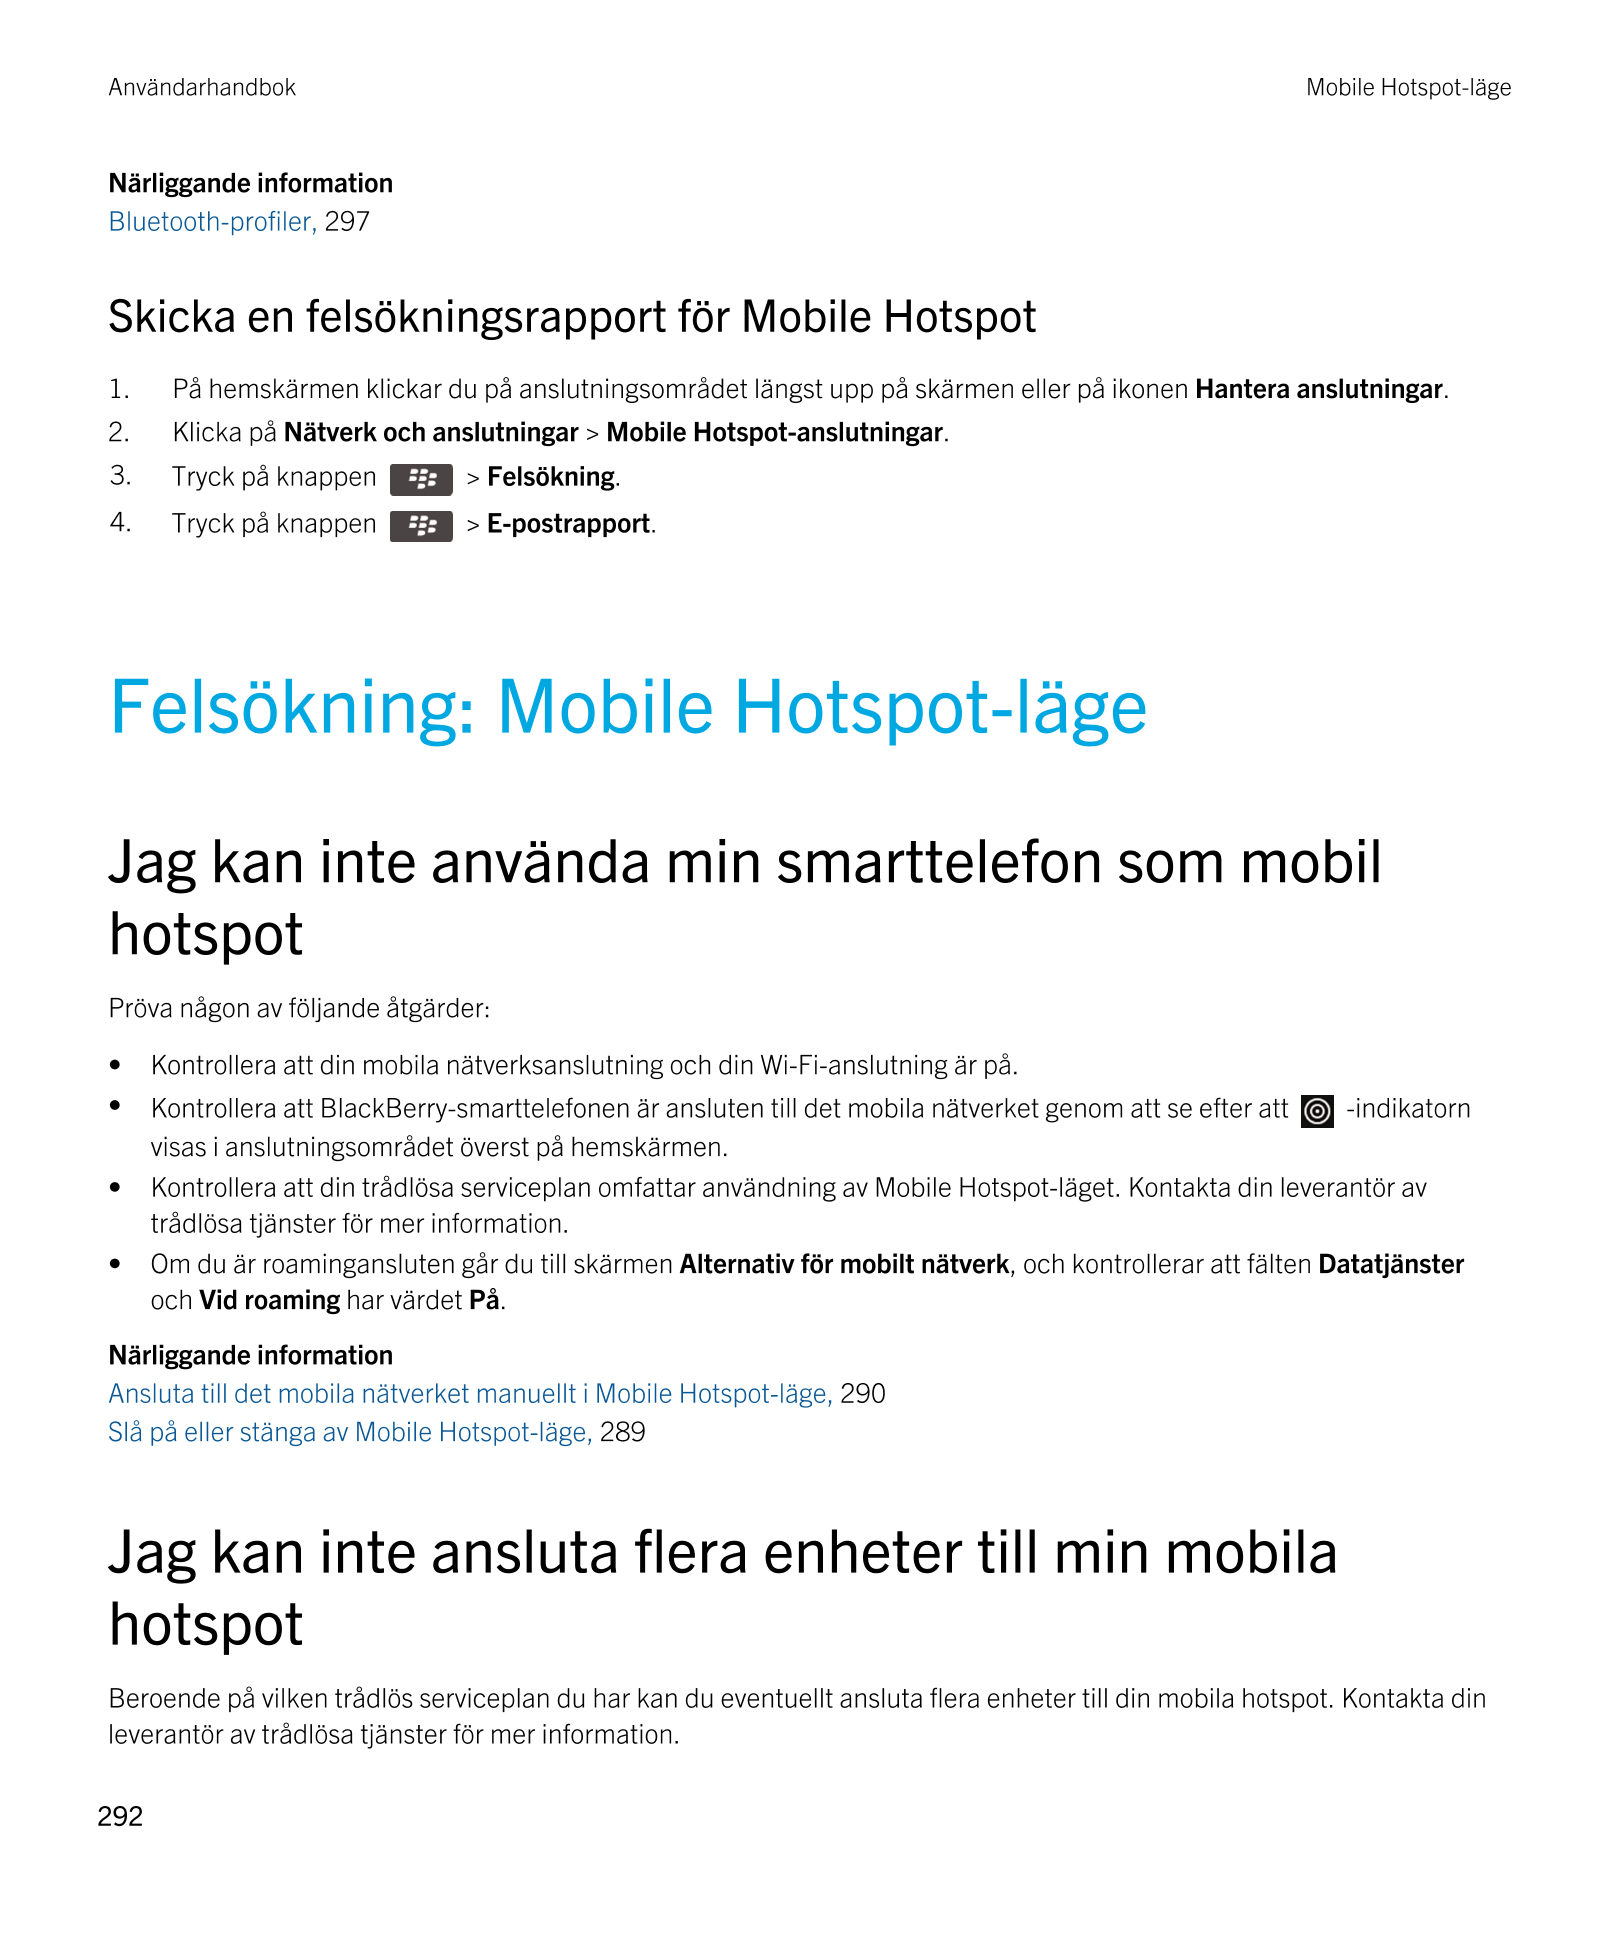 Användarhandbok Mobile Hotspot-läge
Närliggande information
Bluetooth-profiler,  297
Skicka en felsökningsrapport för Mobile Hot